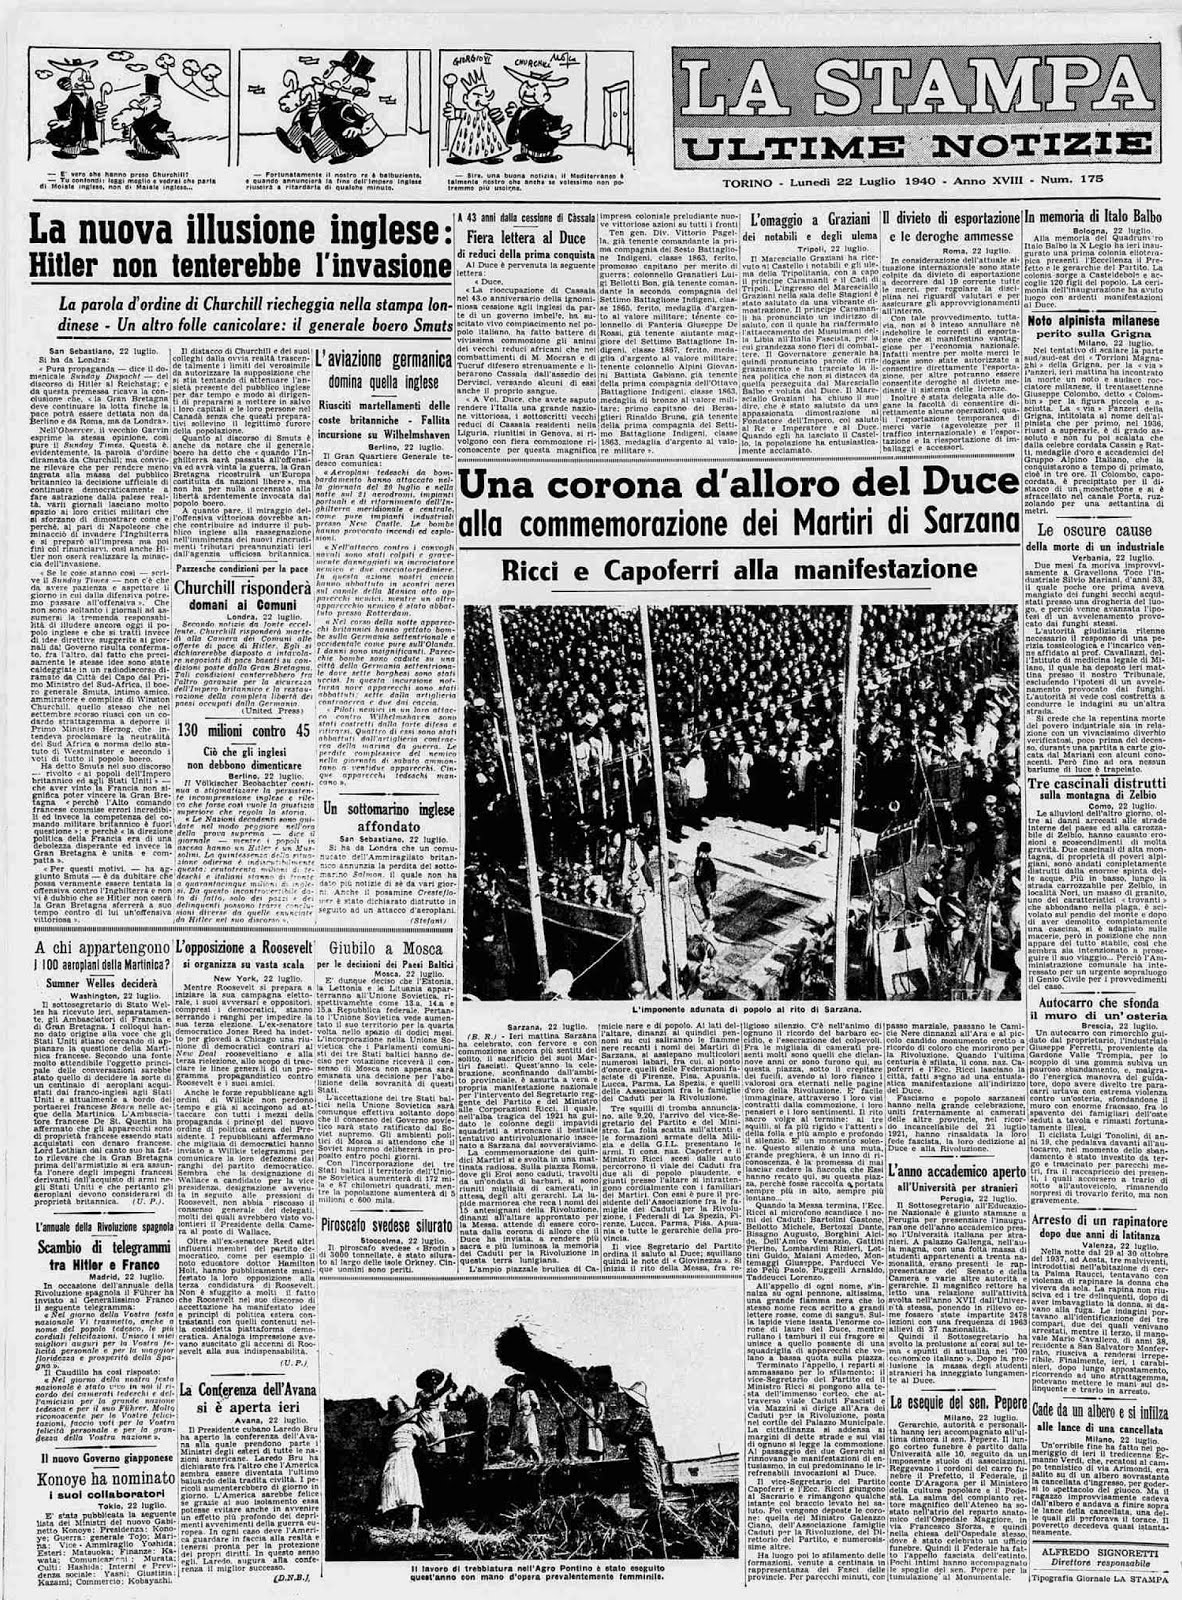 "LA STAMPA" 22 LUGLIO 1940